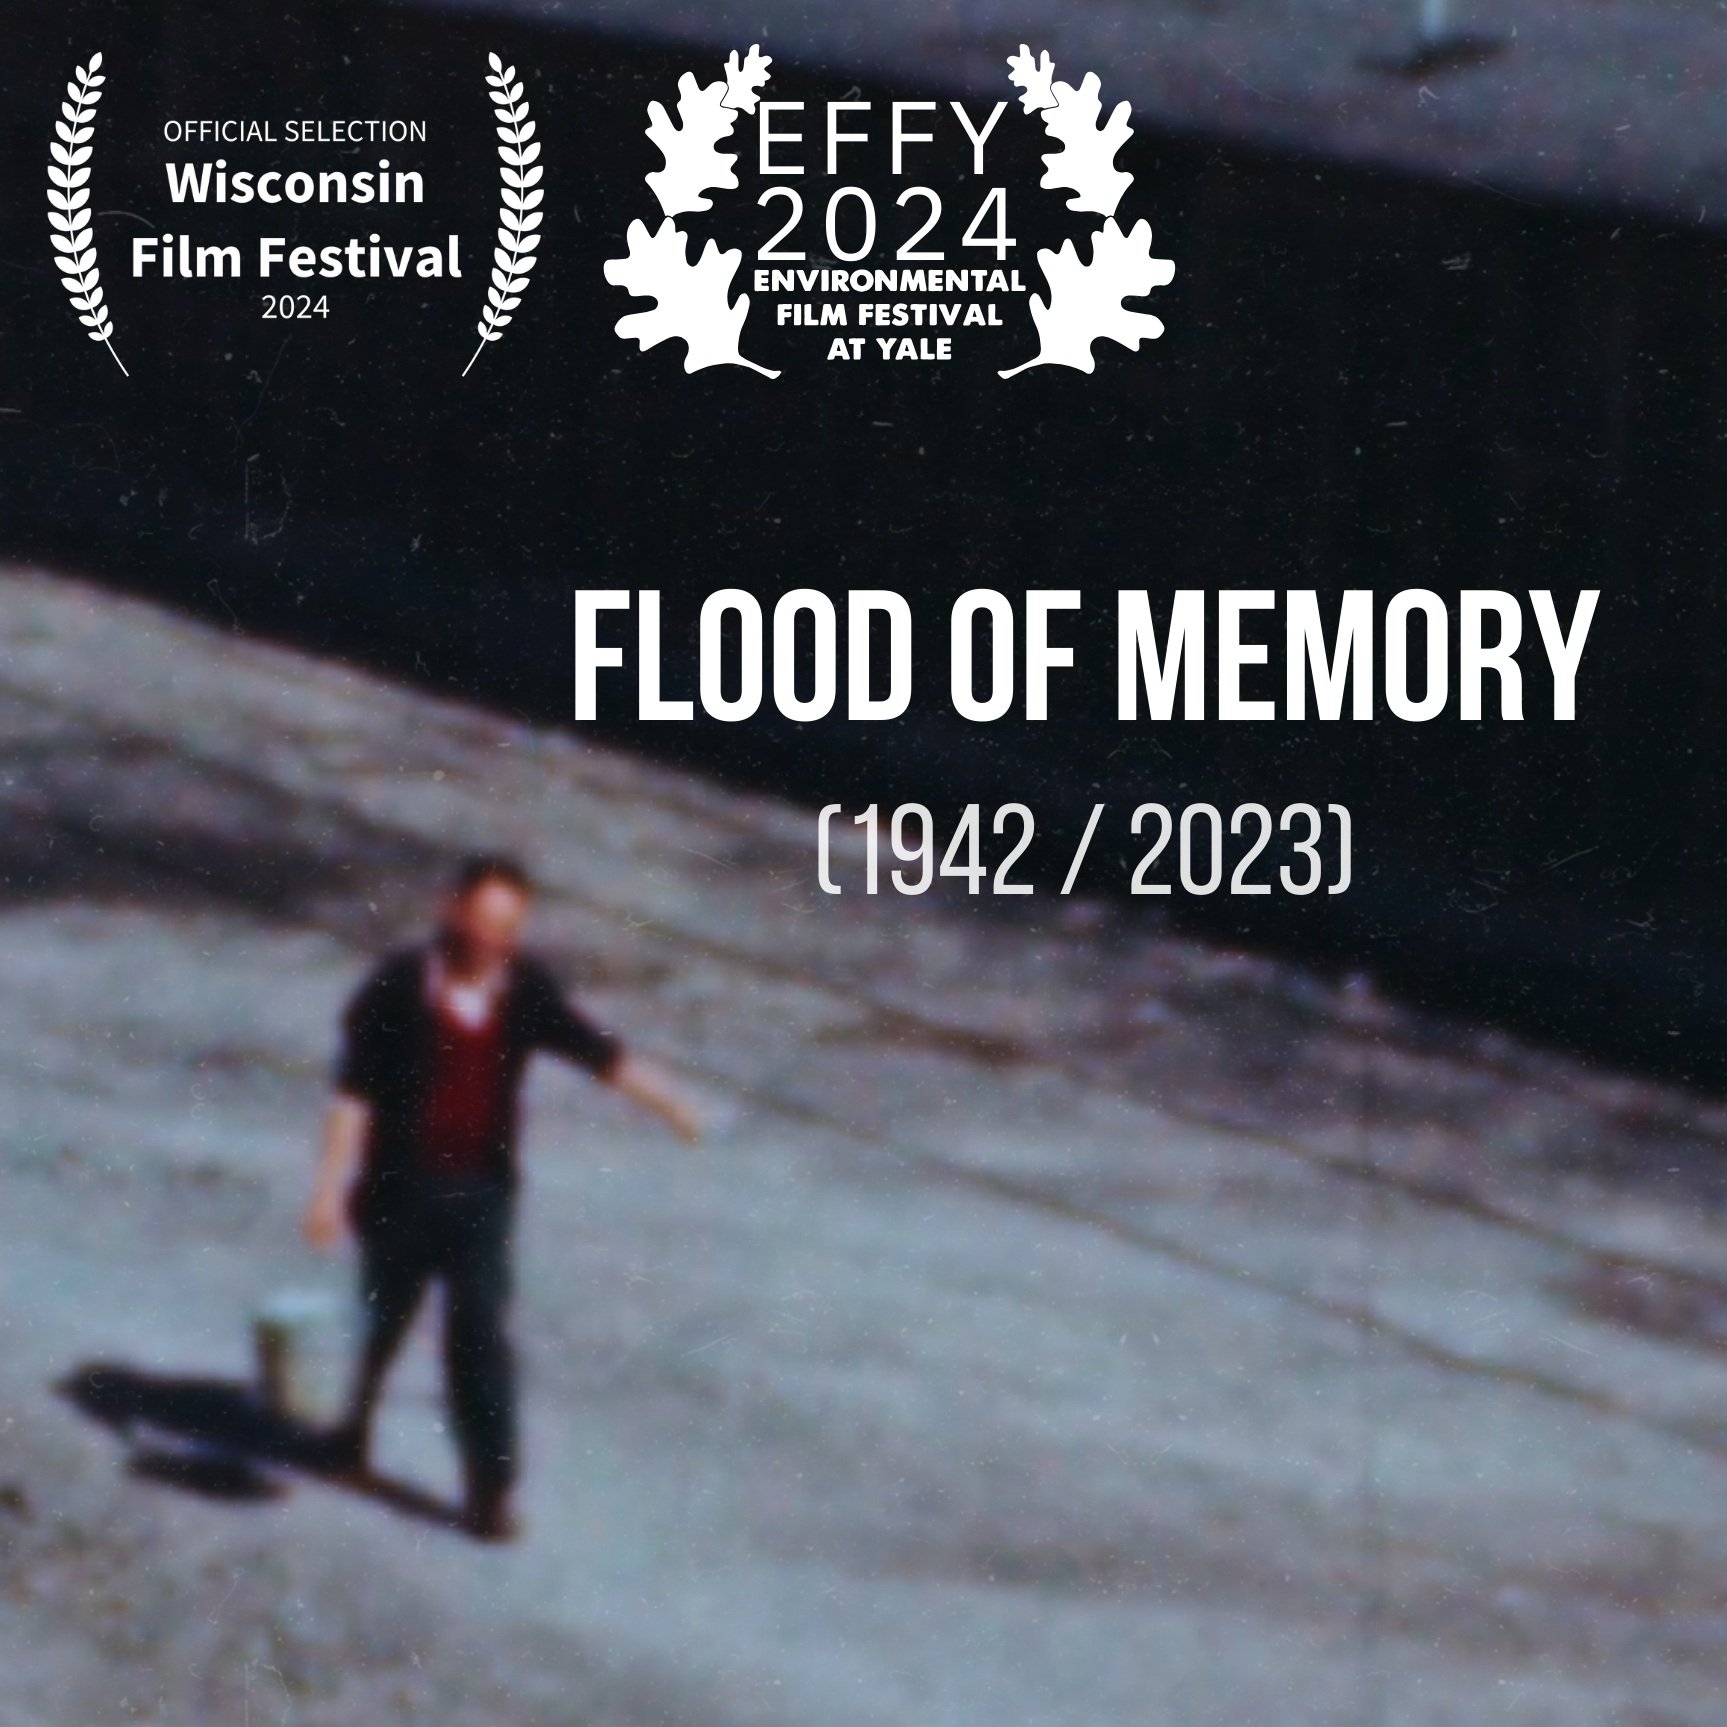 Flood-of-Memory-poster.jpg